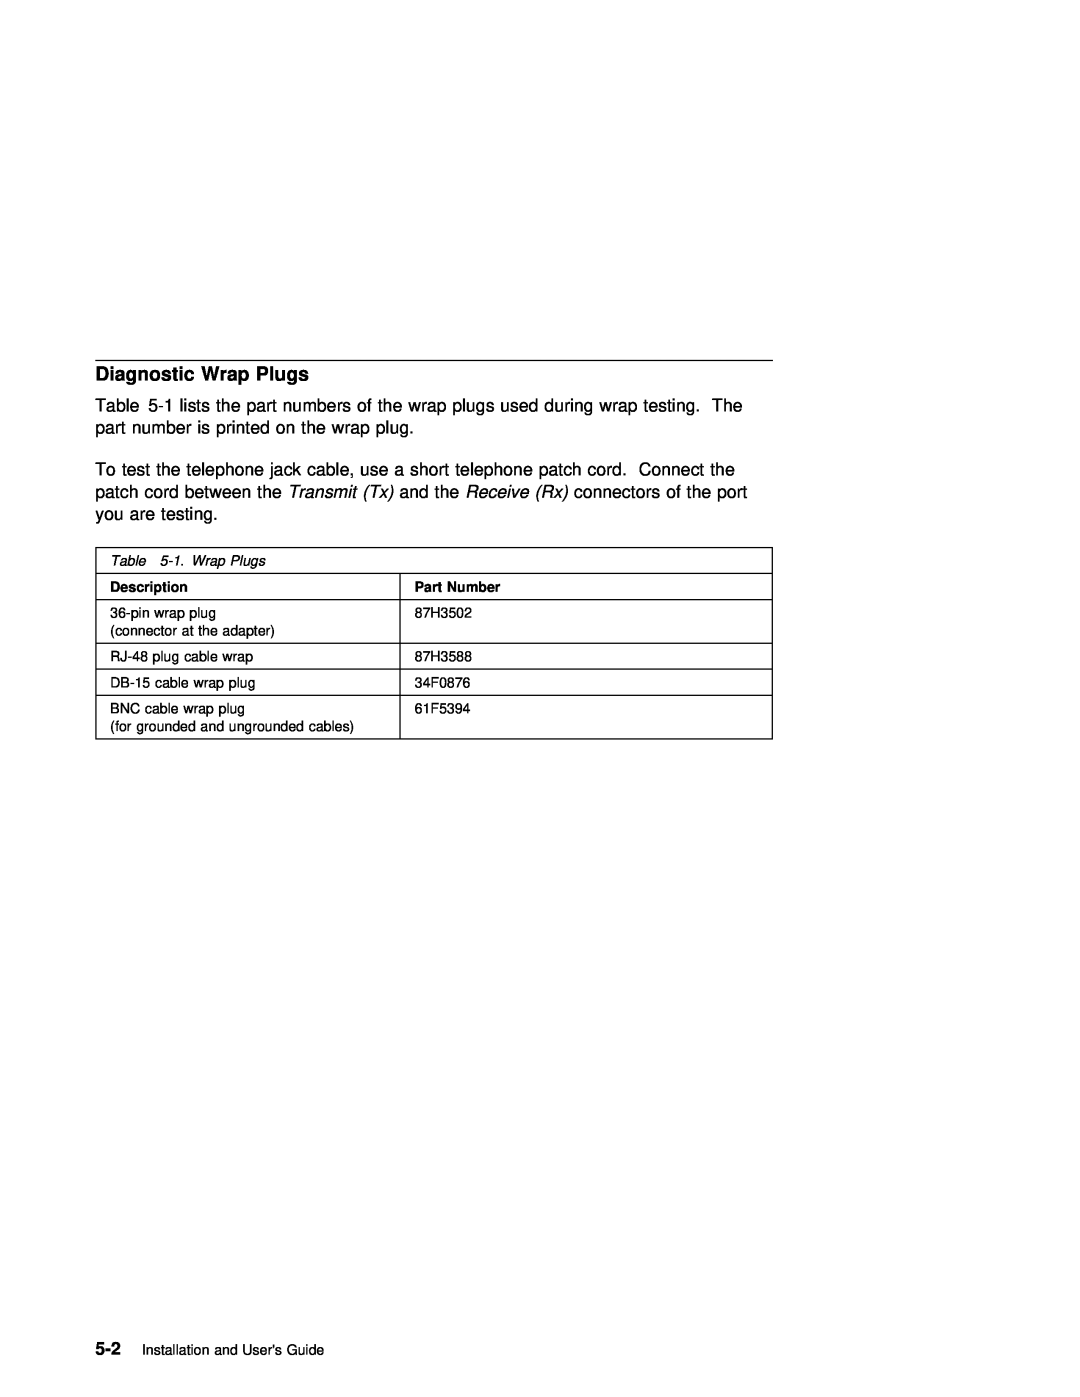 IBM ARTIC960RxD manual Diagnostic, Wrap, Description, Part Number 